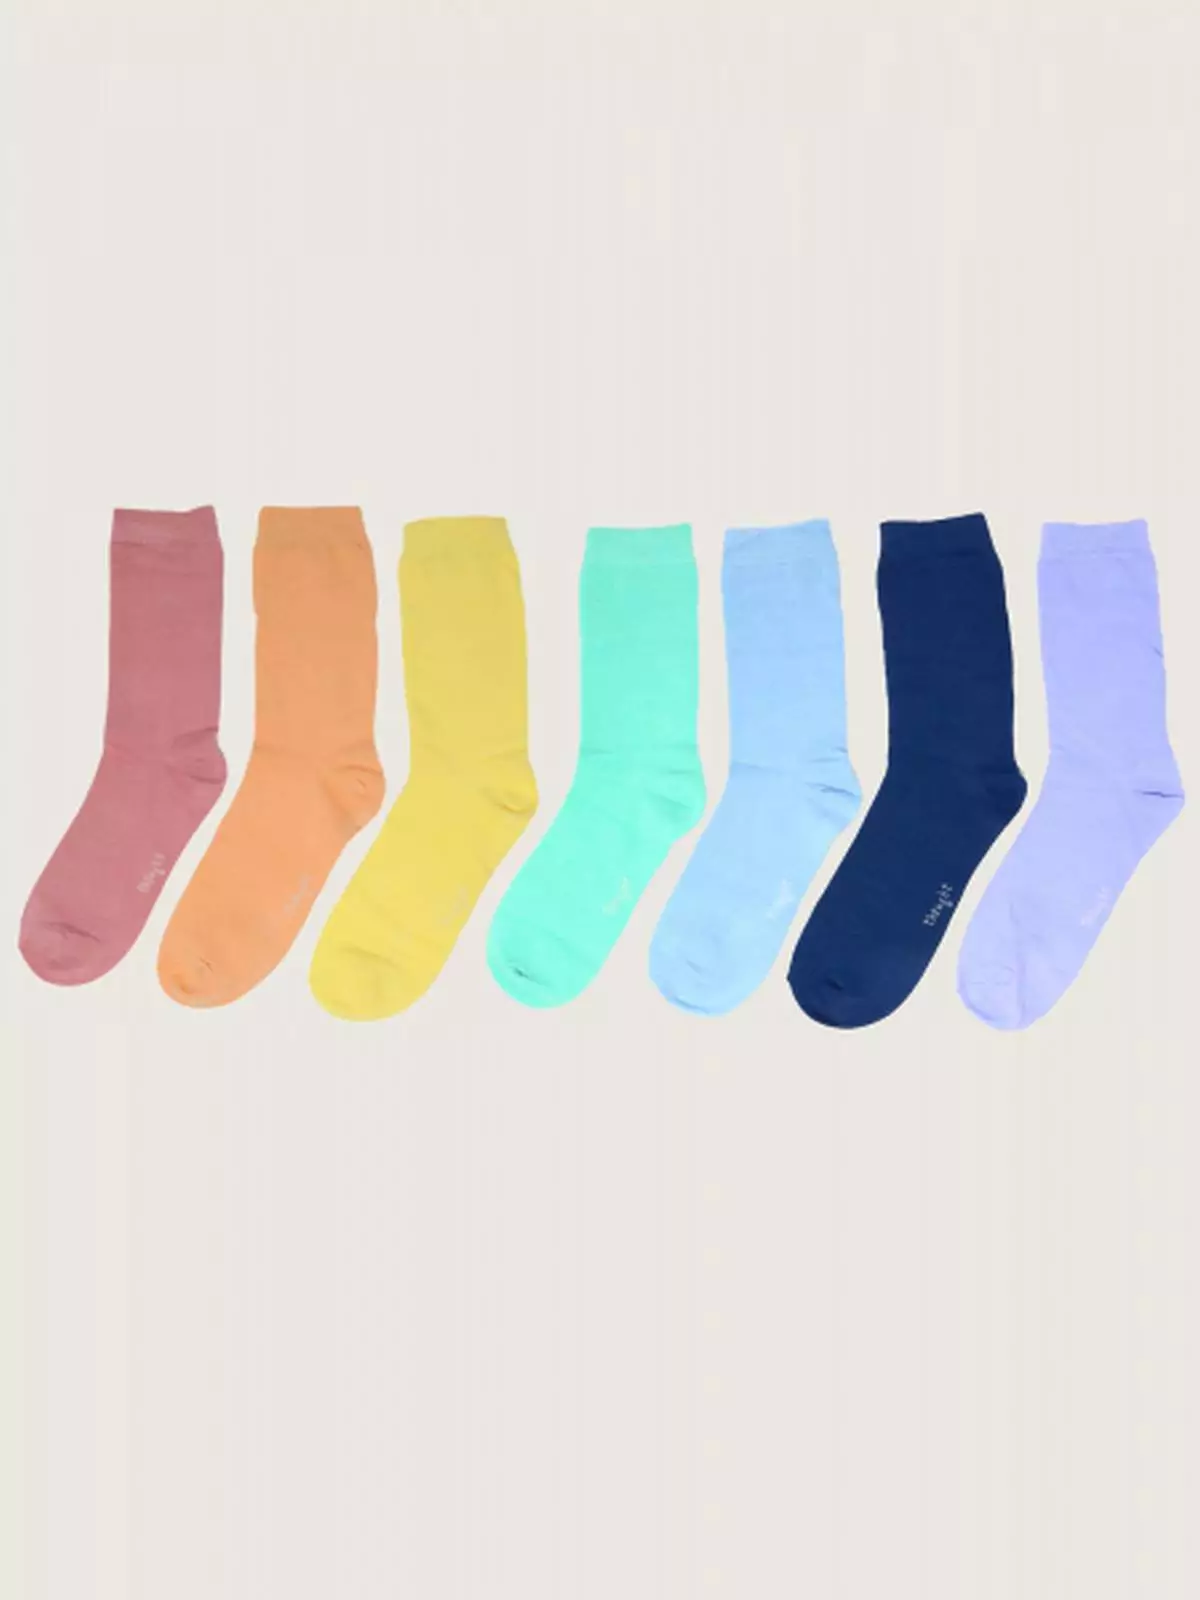 Socken Pastel Colours of the Rainbow, 7er-Pack